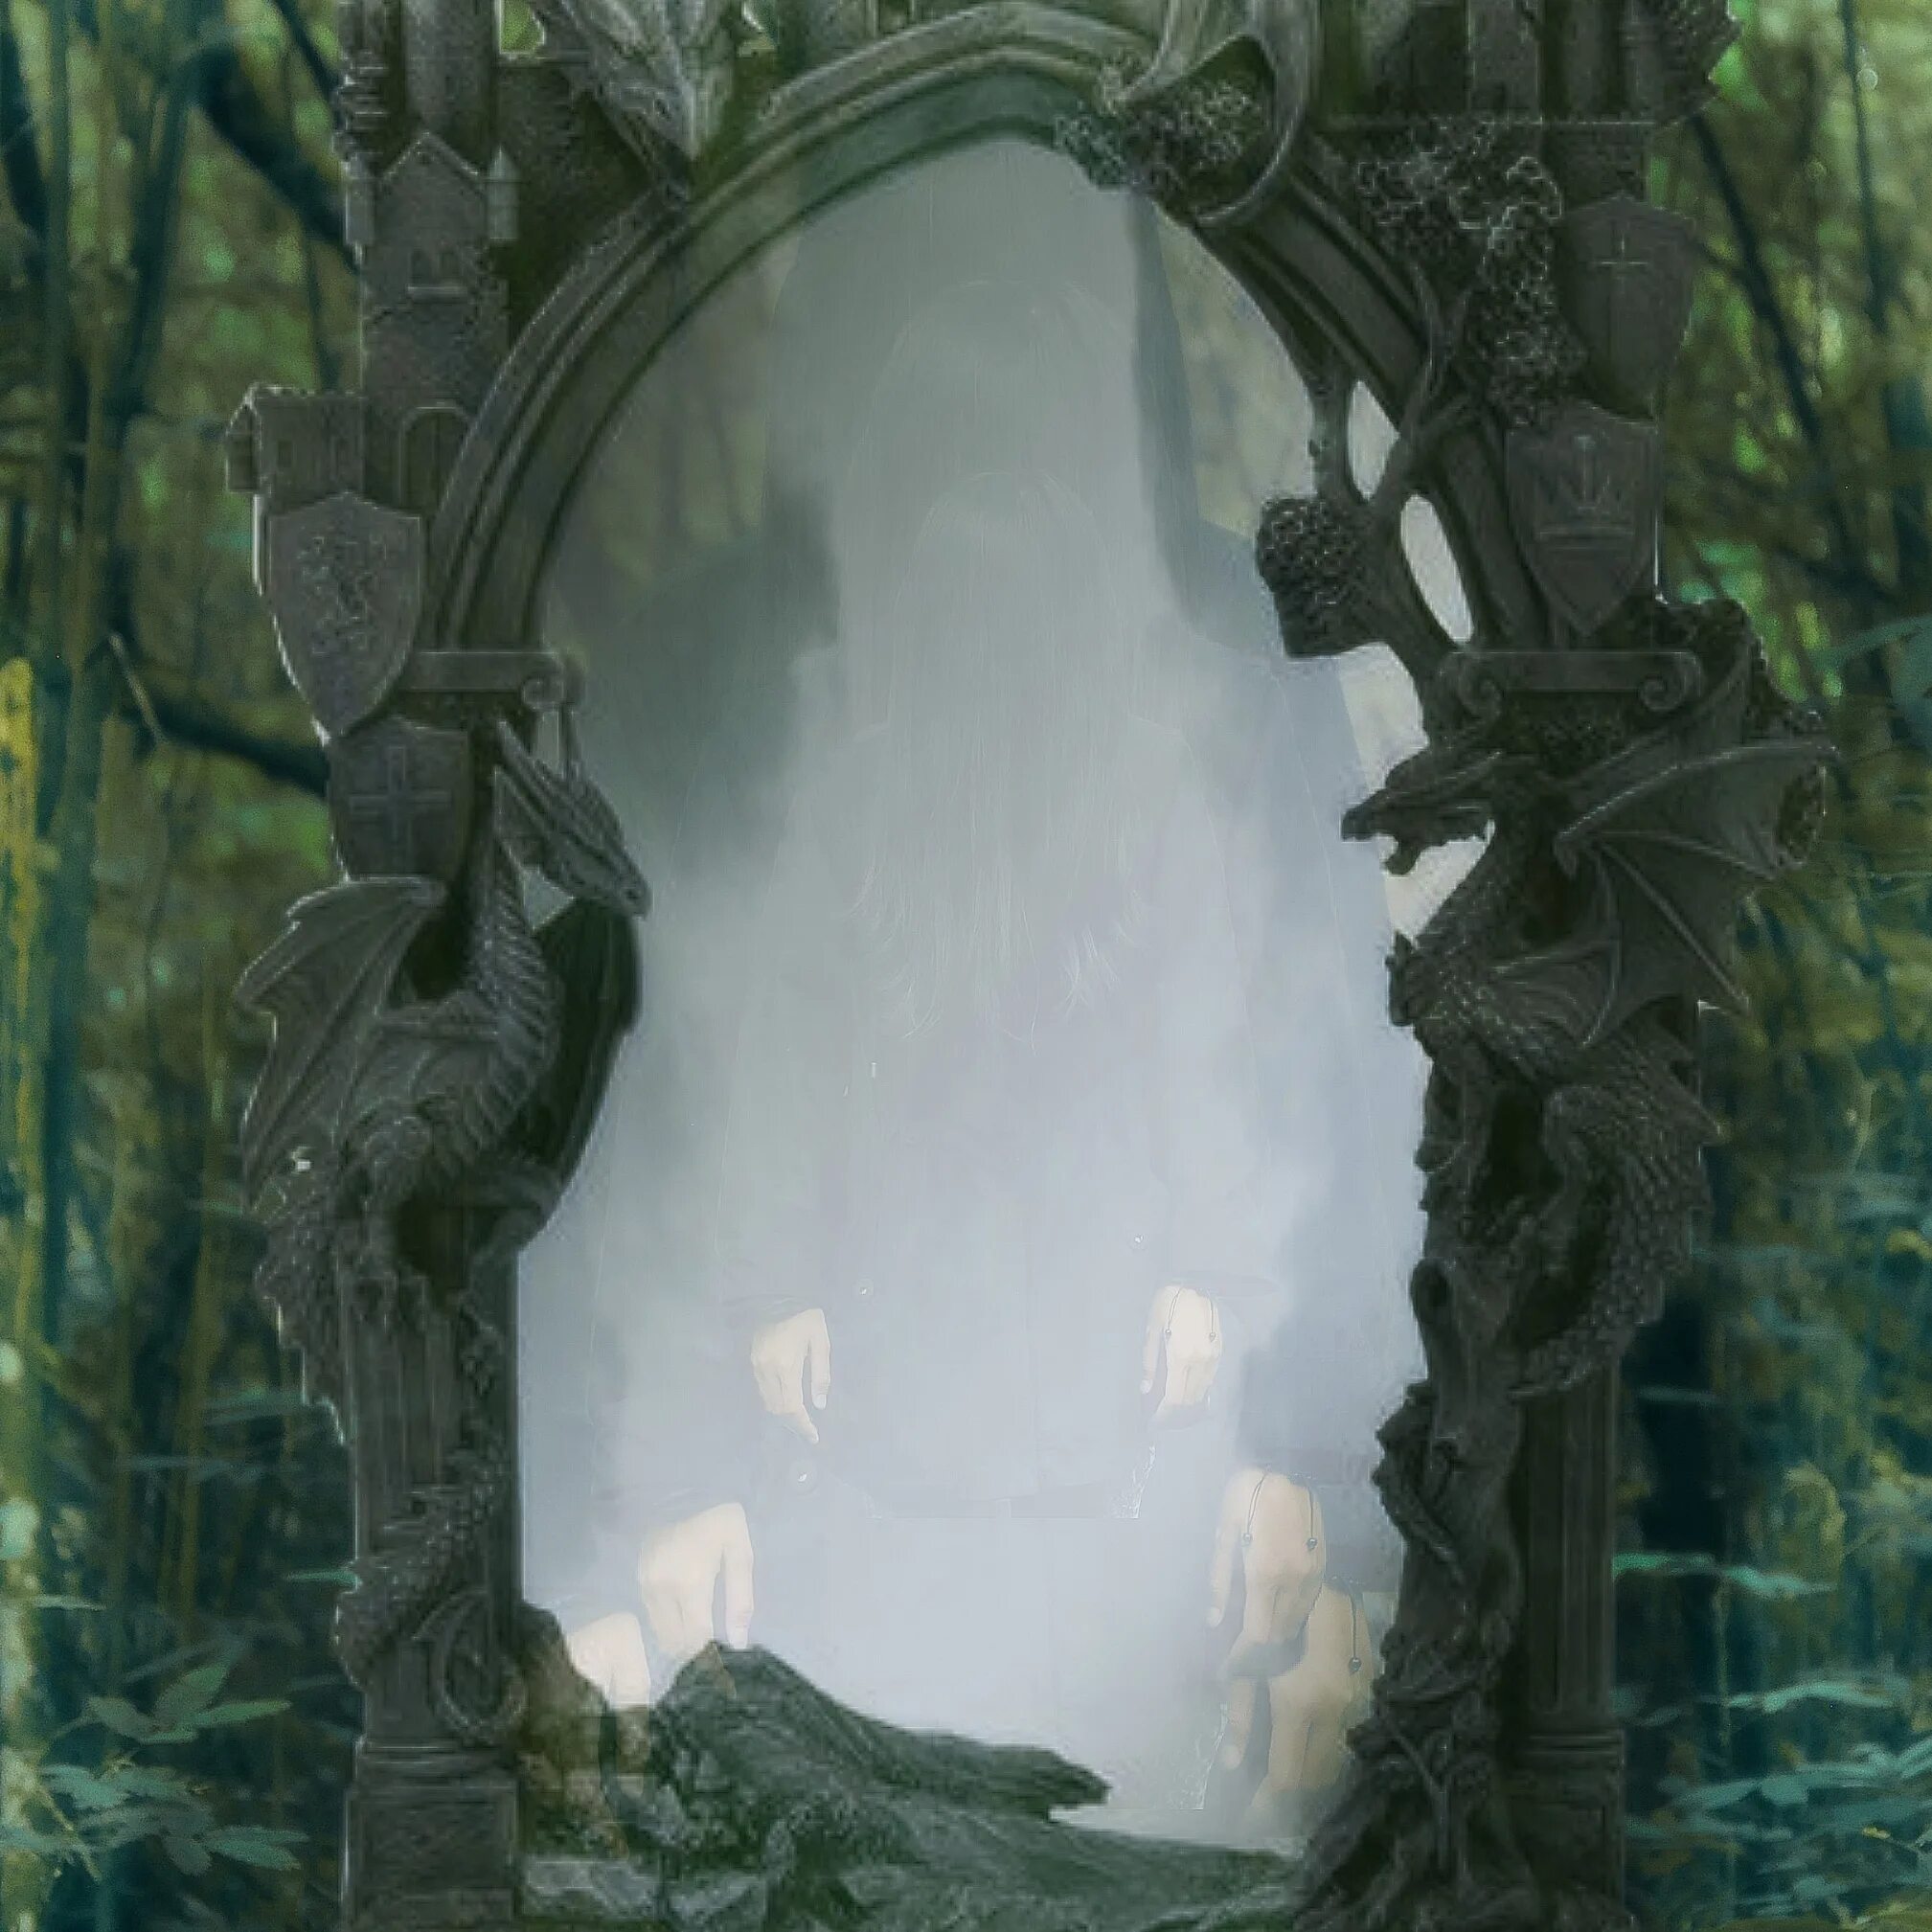 Магический портал. "Волшебное зеркало". Зазеркалье. Гилберт у. "волшебное зеркало". Мистическое зеркало. Сказочные врата.